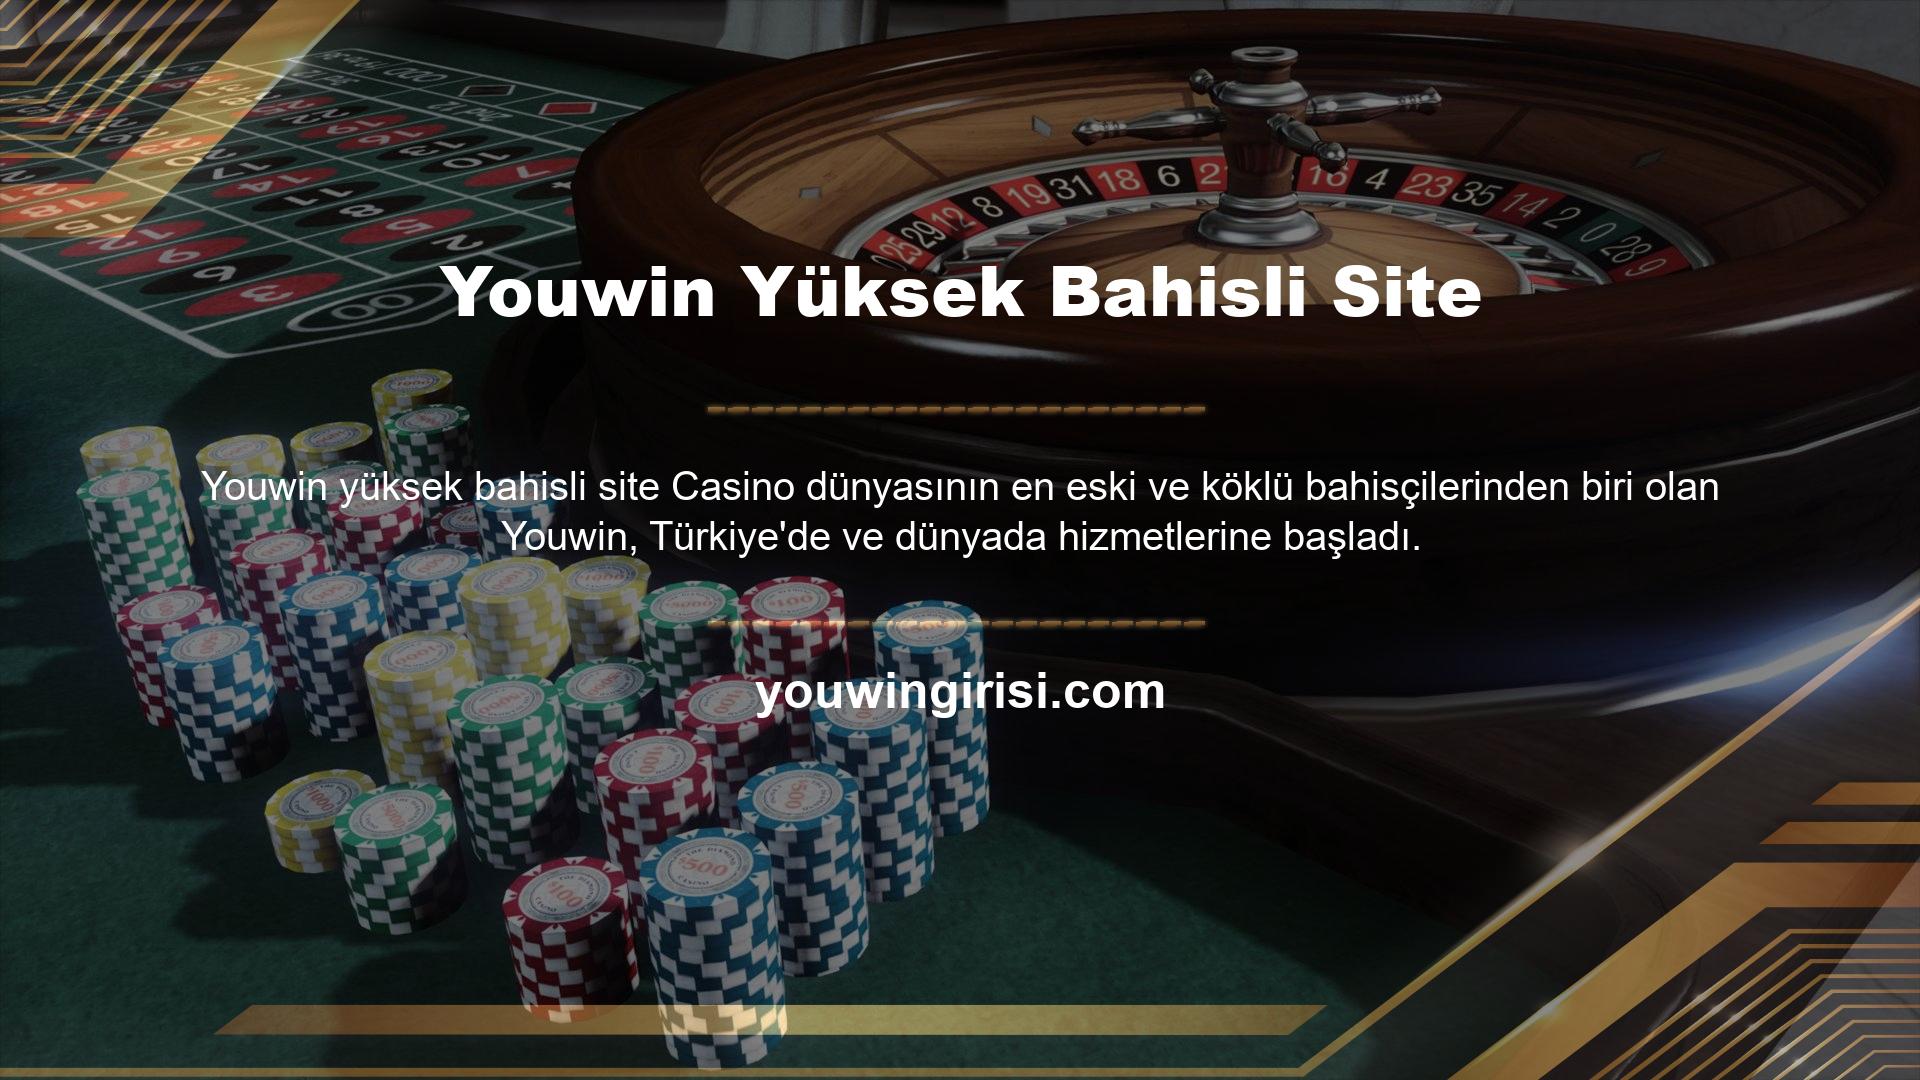 Yüksek bahis oranları, bahis çeşitliliği, casino oyunları ve büyük bonusları ile tanınan site, en popüler sitelerden biridir